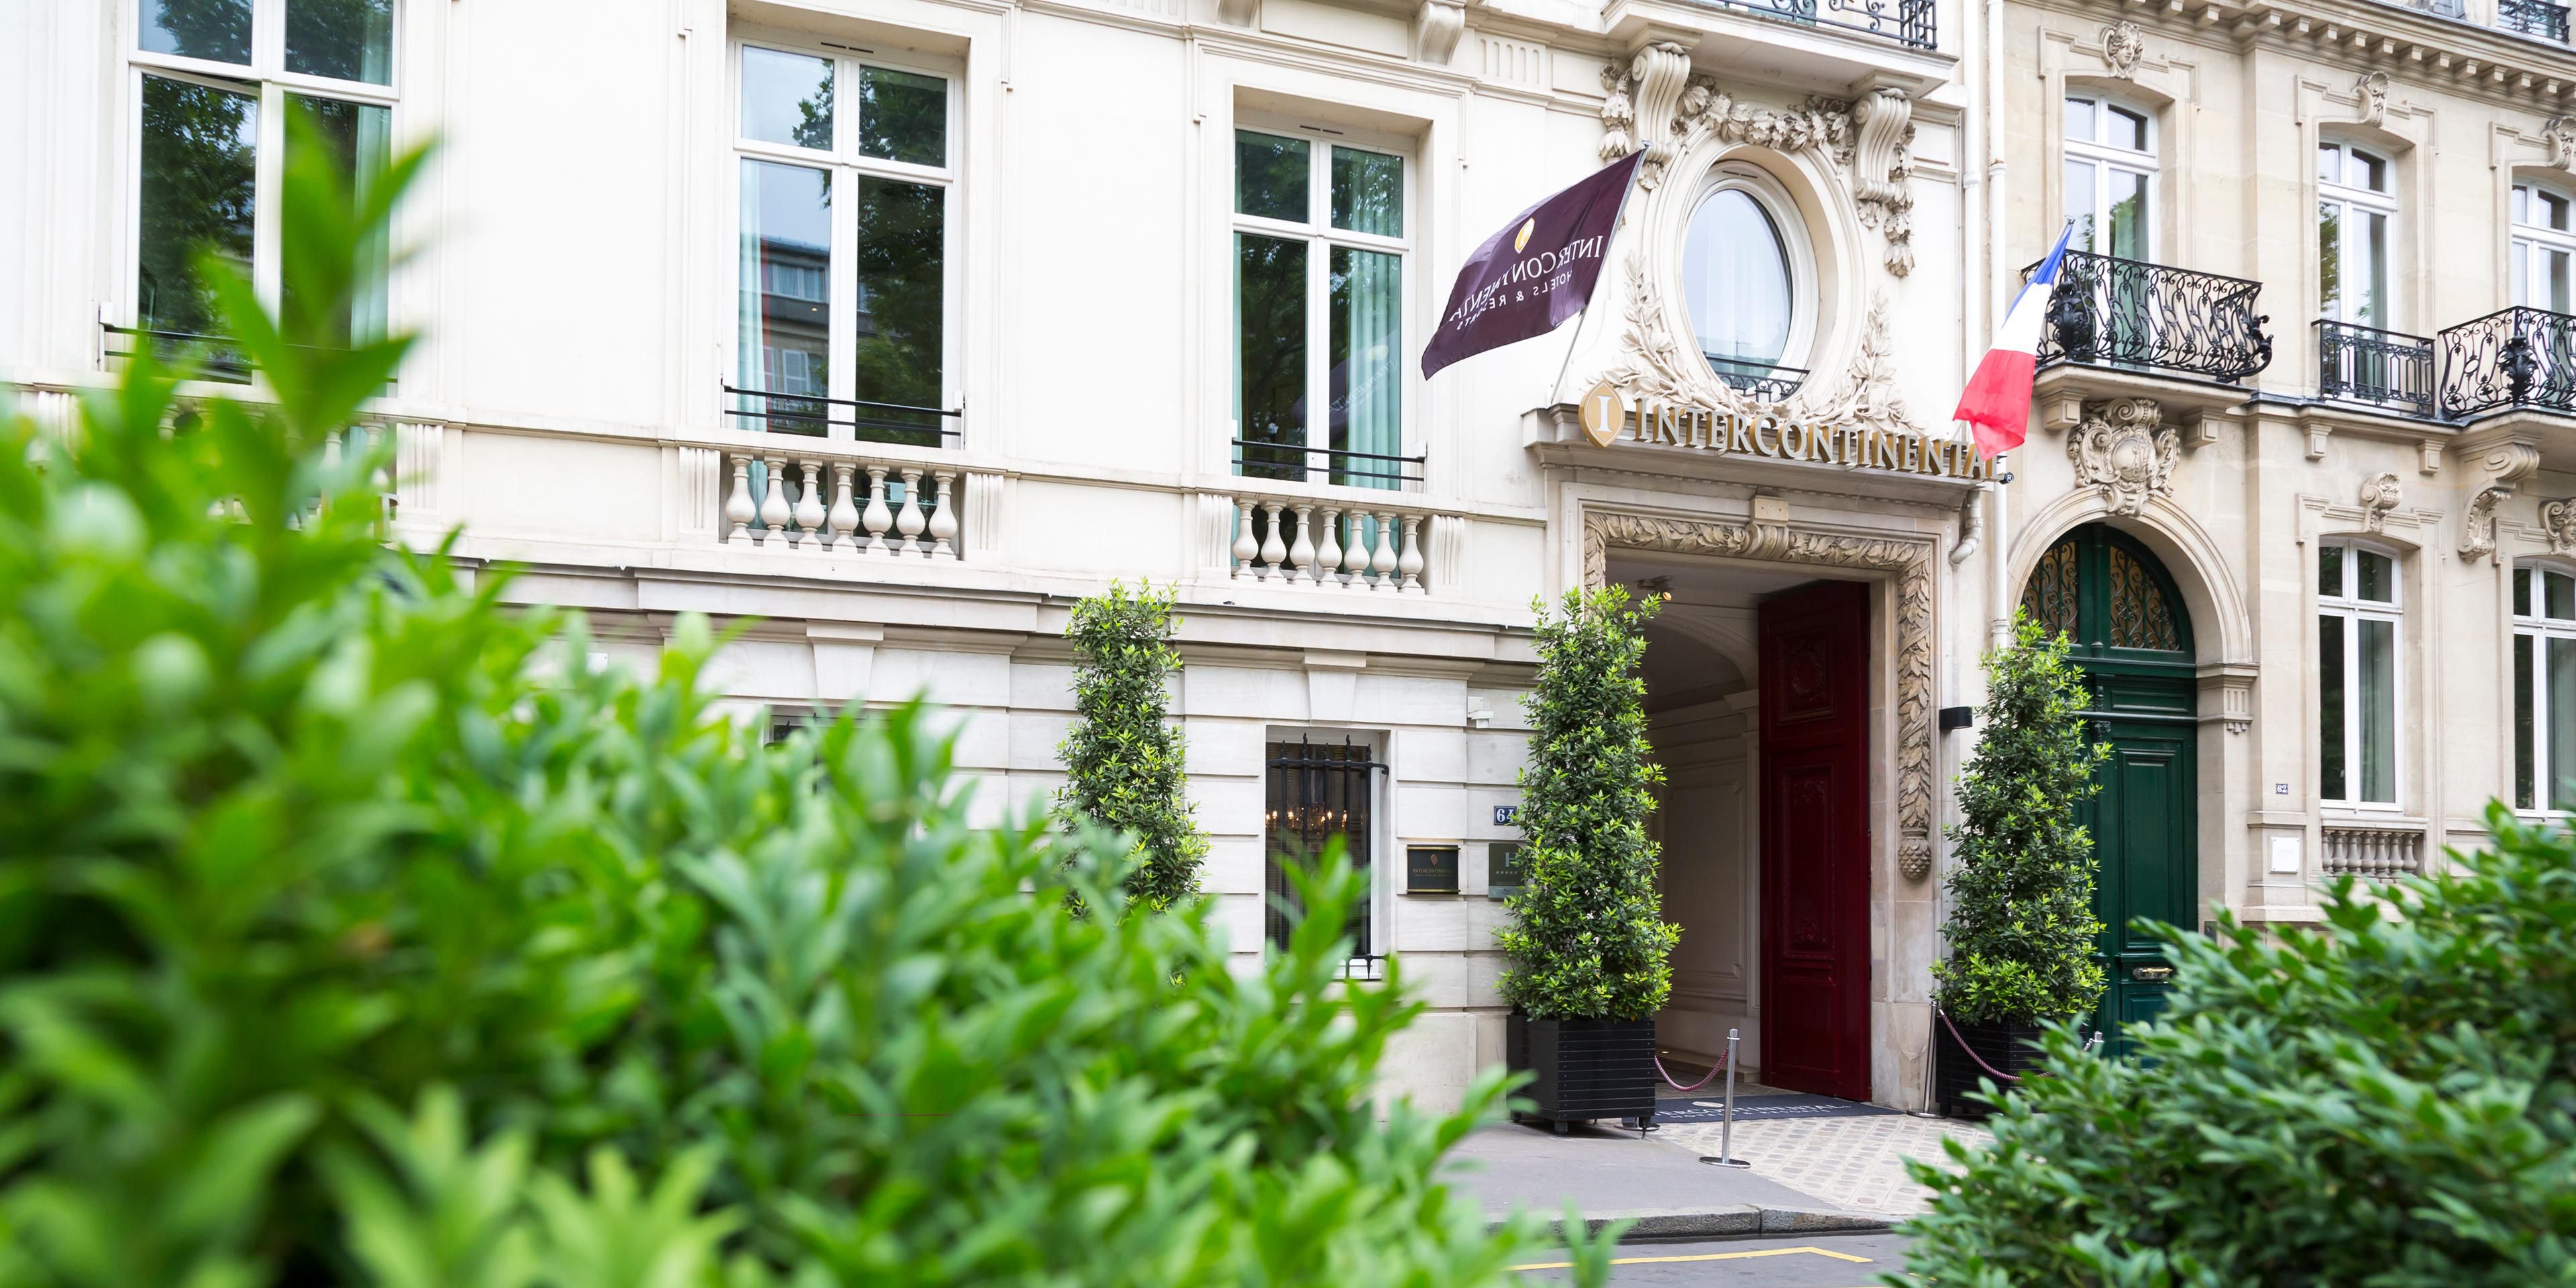 5 Star Luxury Hotel Near Arc De Triomphe